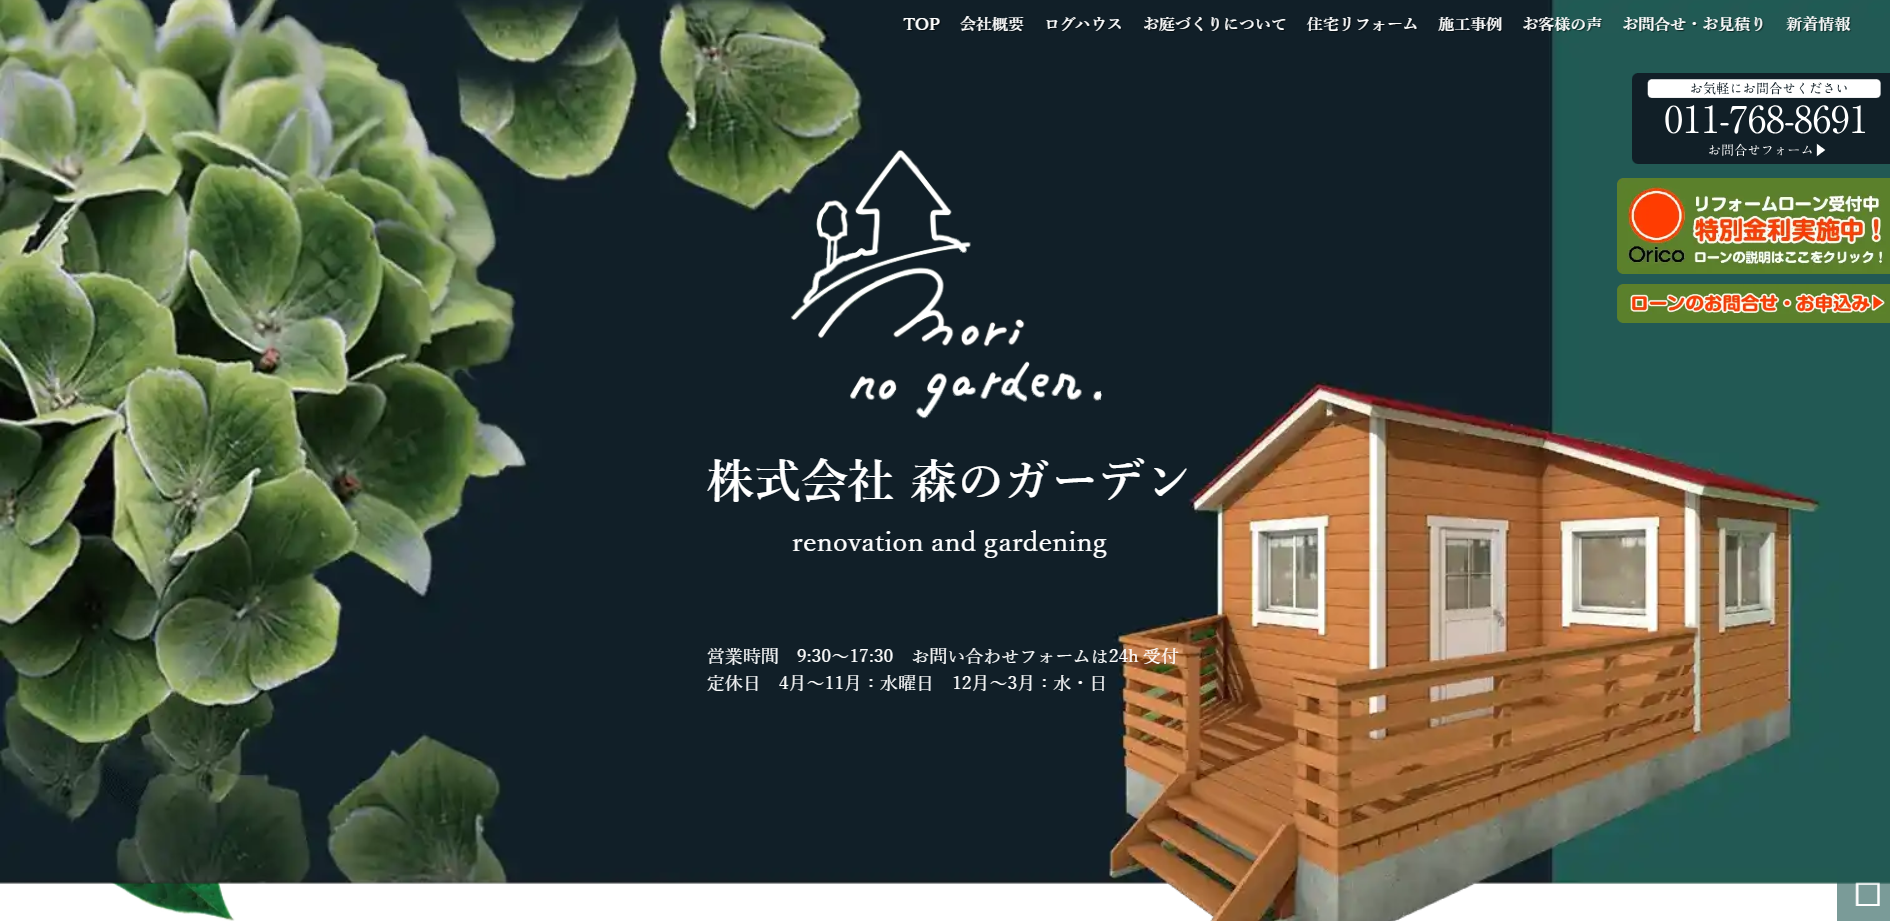 札幌市で評判のおすすめ外構業者ランキング 第17位 株式会社 森のガーデン